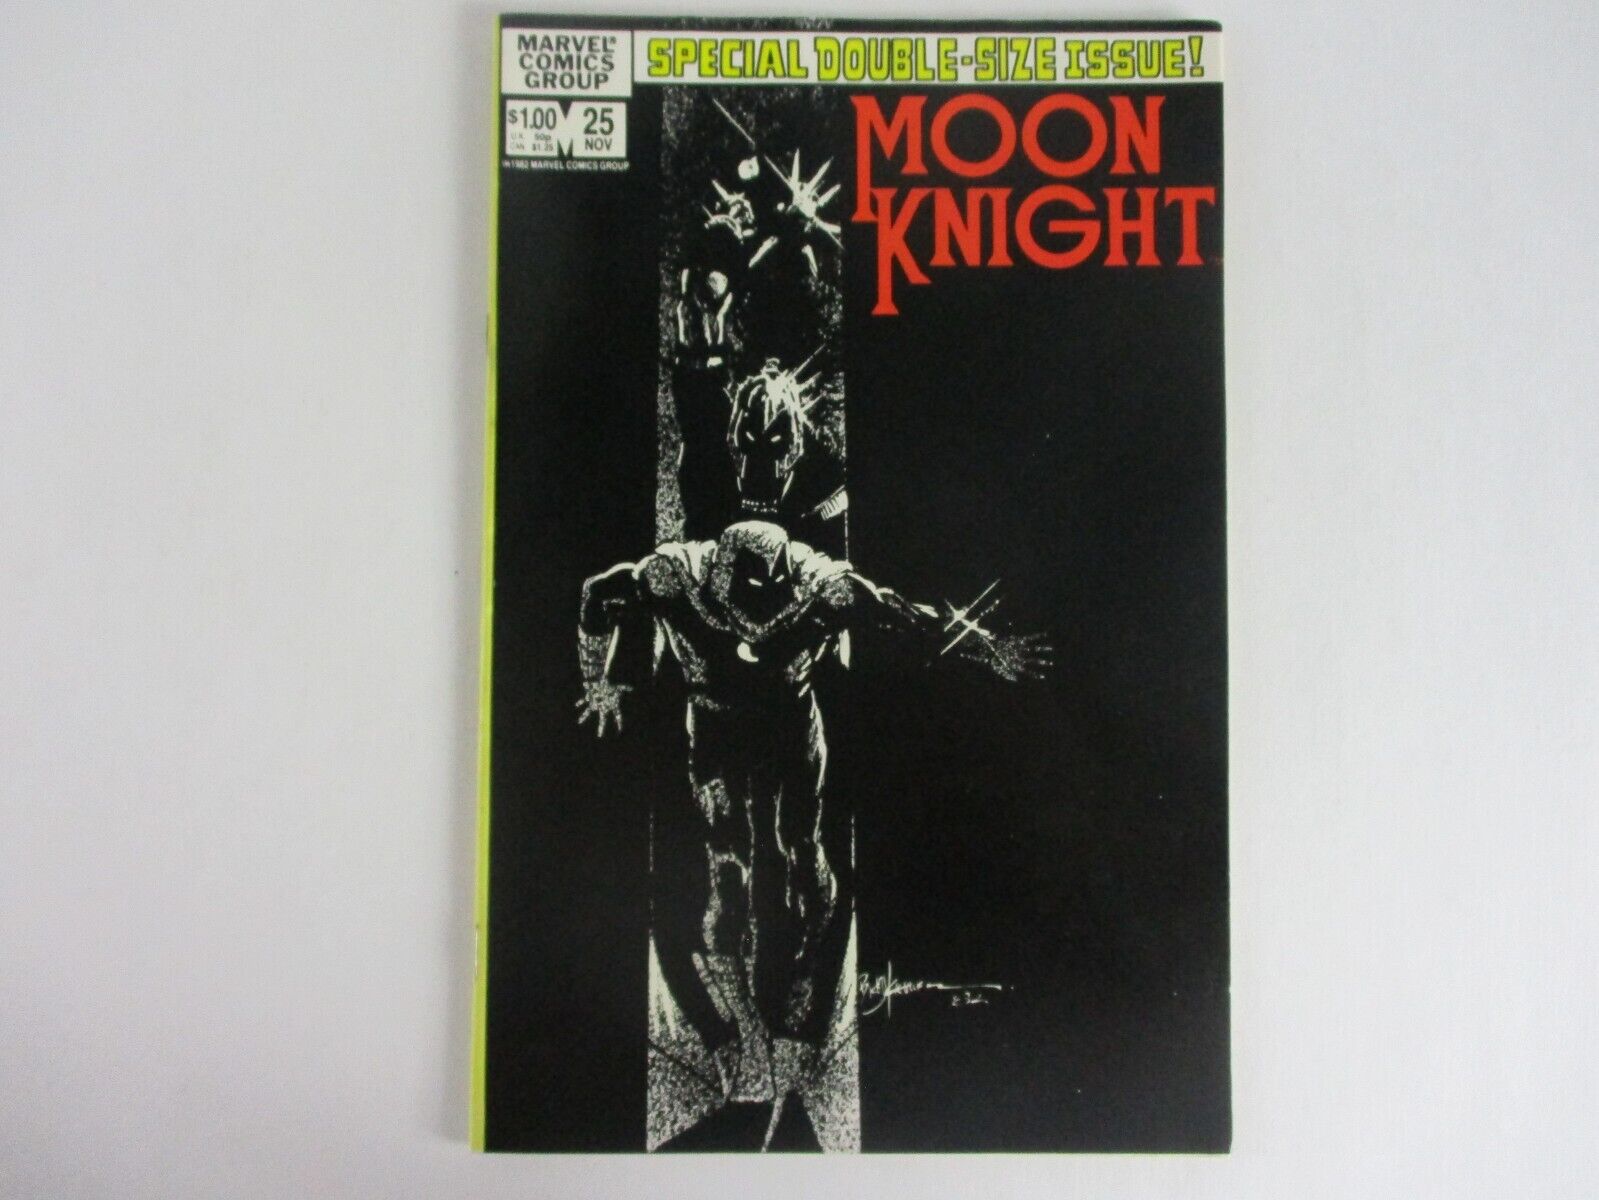 Marvel Comics MOON KNIGHT #25 November 1982 LOOKS GREAT